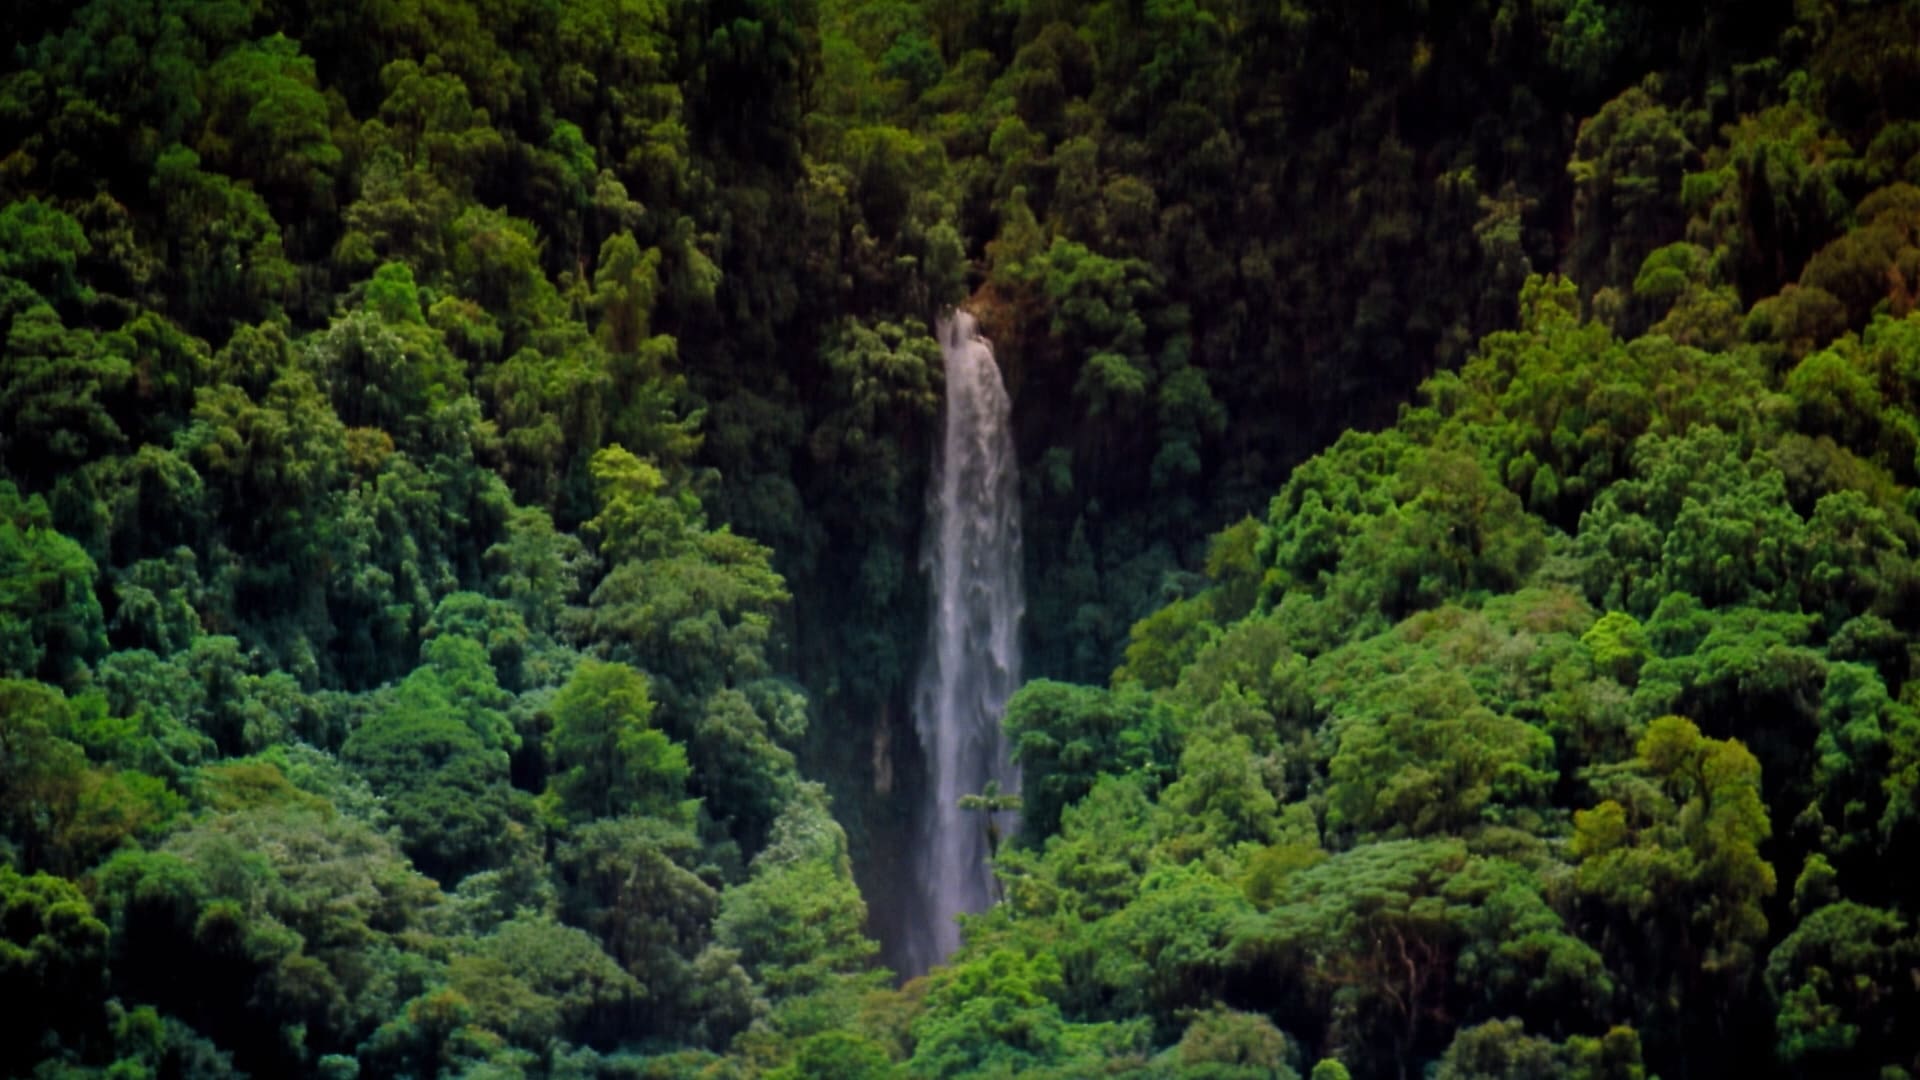 IMAX: Den Tropiska Regnskogen